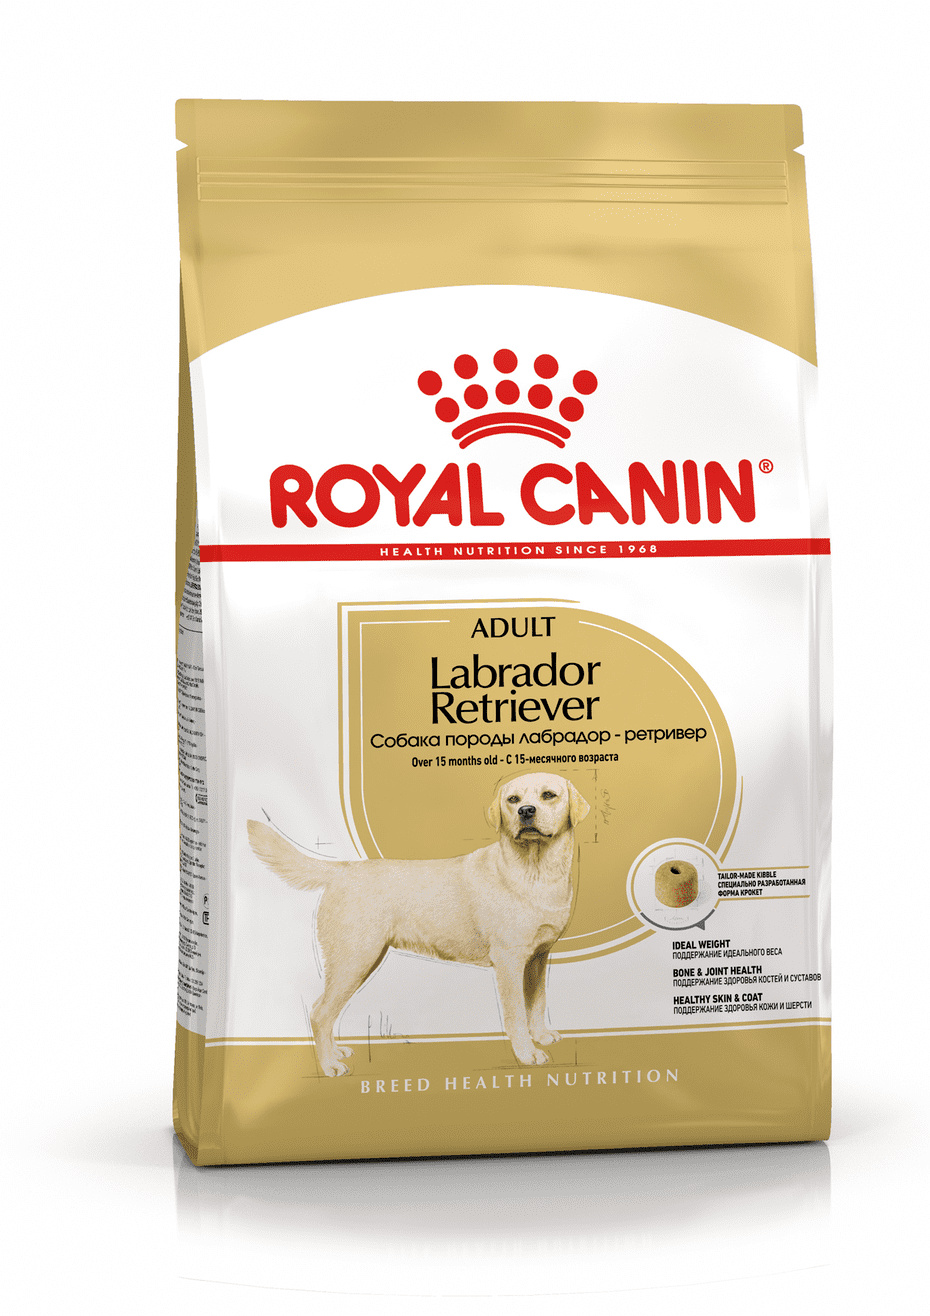 Для взрослого лабрадора с 15 мес. (3 кг) Royal Canin (сухие корма) Для взрослого лабрадора с 15 мес. (3 кг) - фото 1